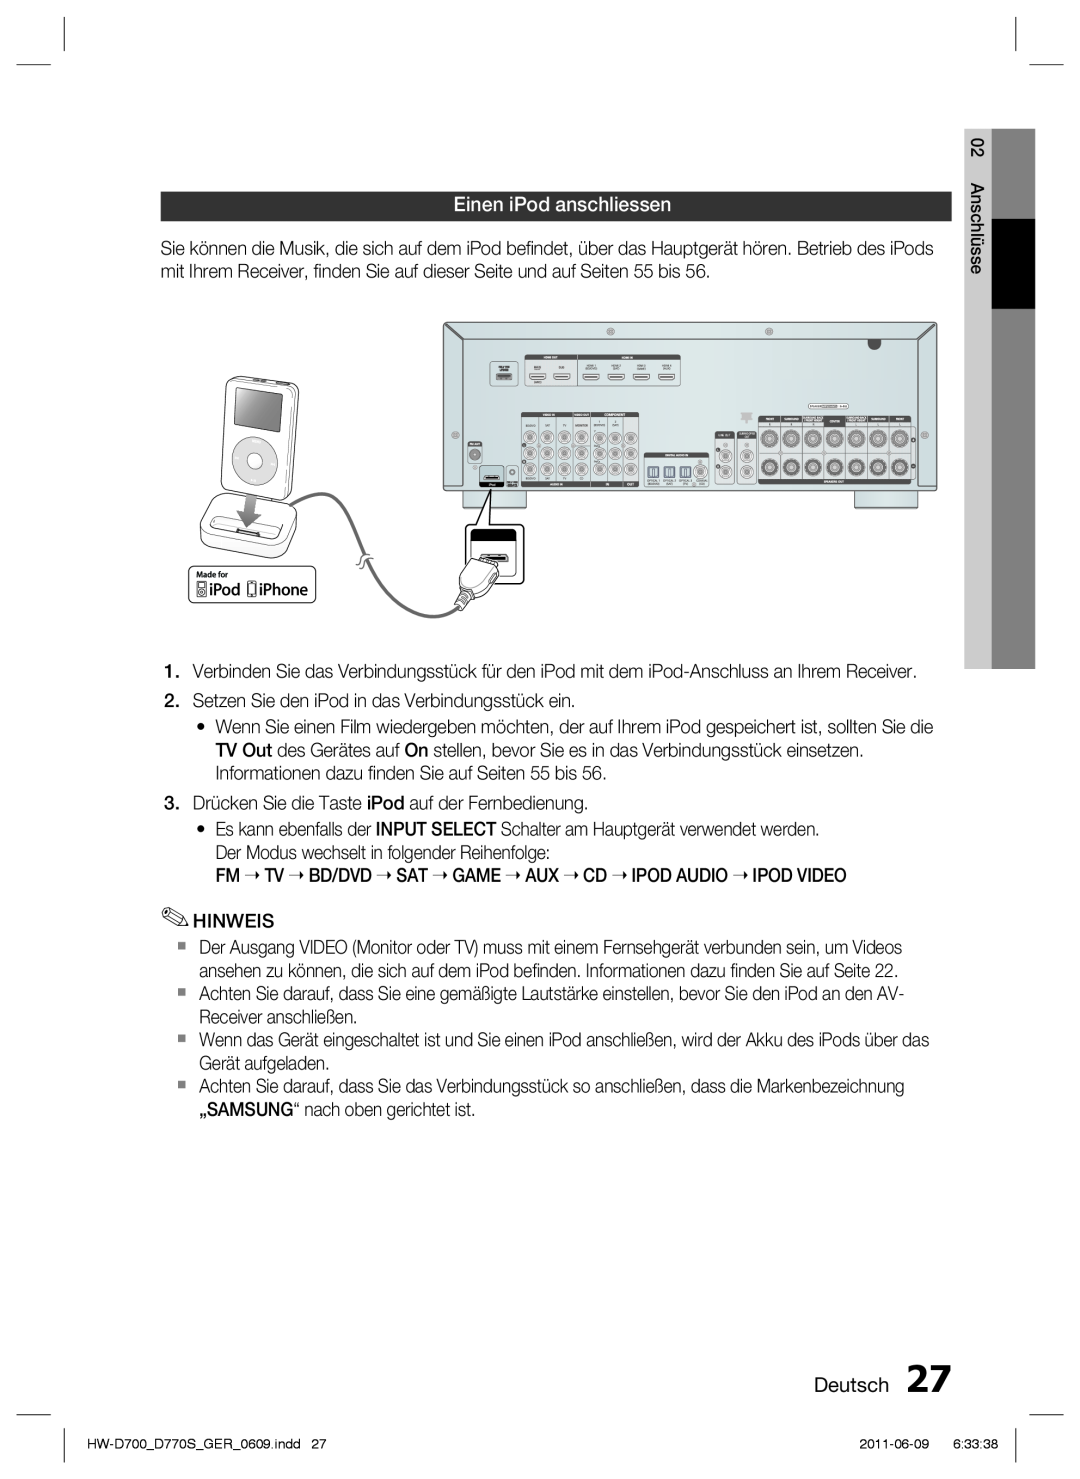 Samsung HW-D700/EN, HW-D770S/EN manual Einen iPod anschliessen, Deutsch 